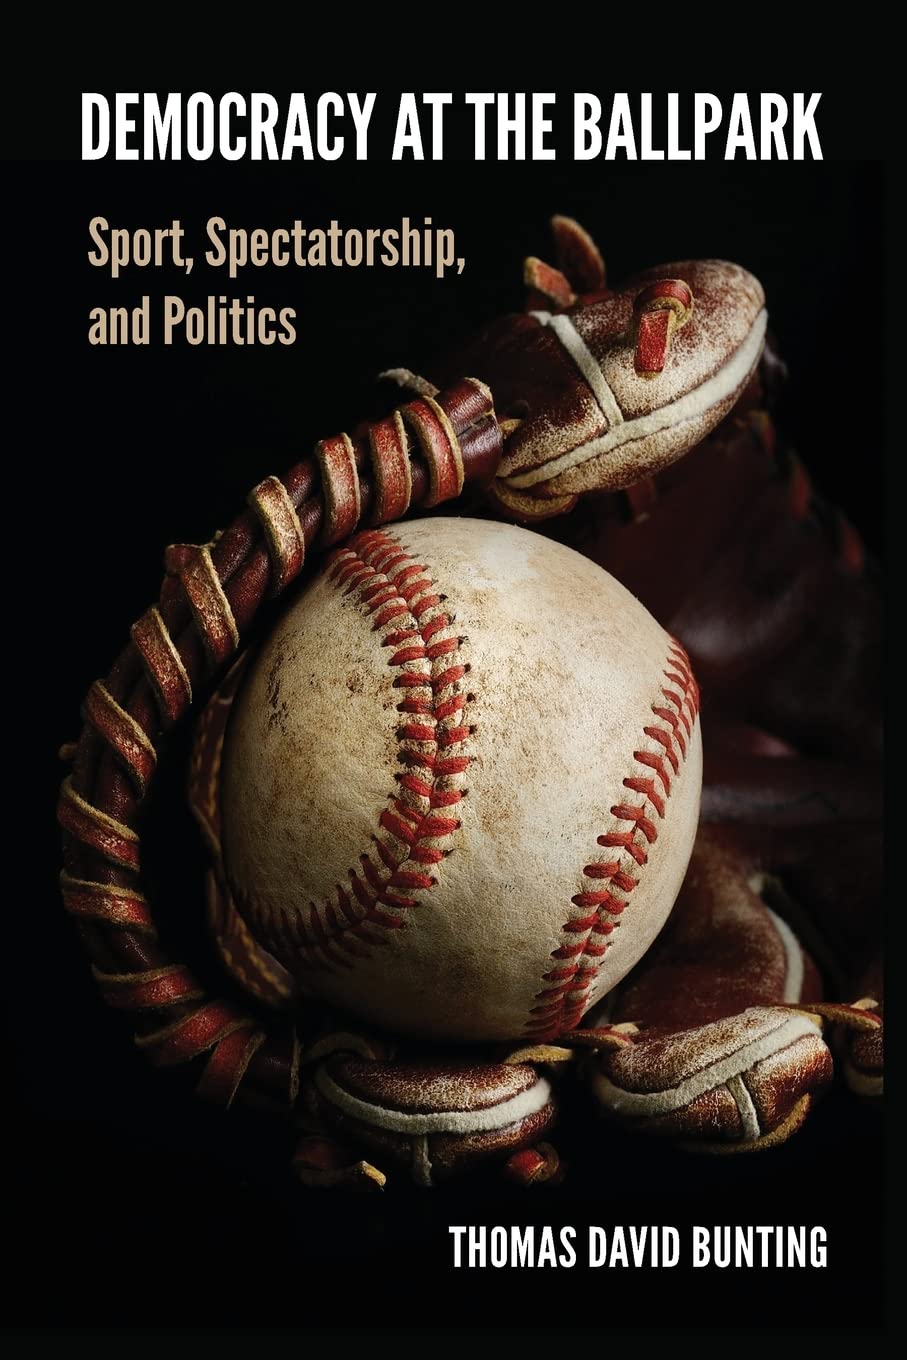 Democracy at the Ballpark, by Thomas David Bunting